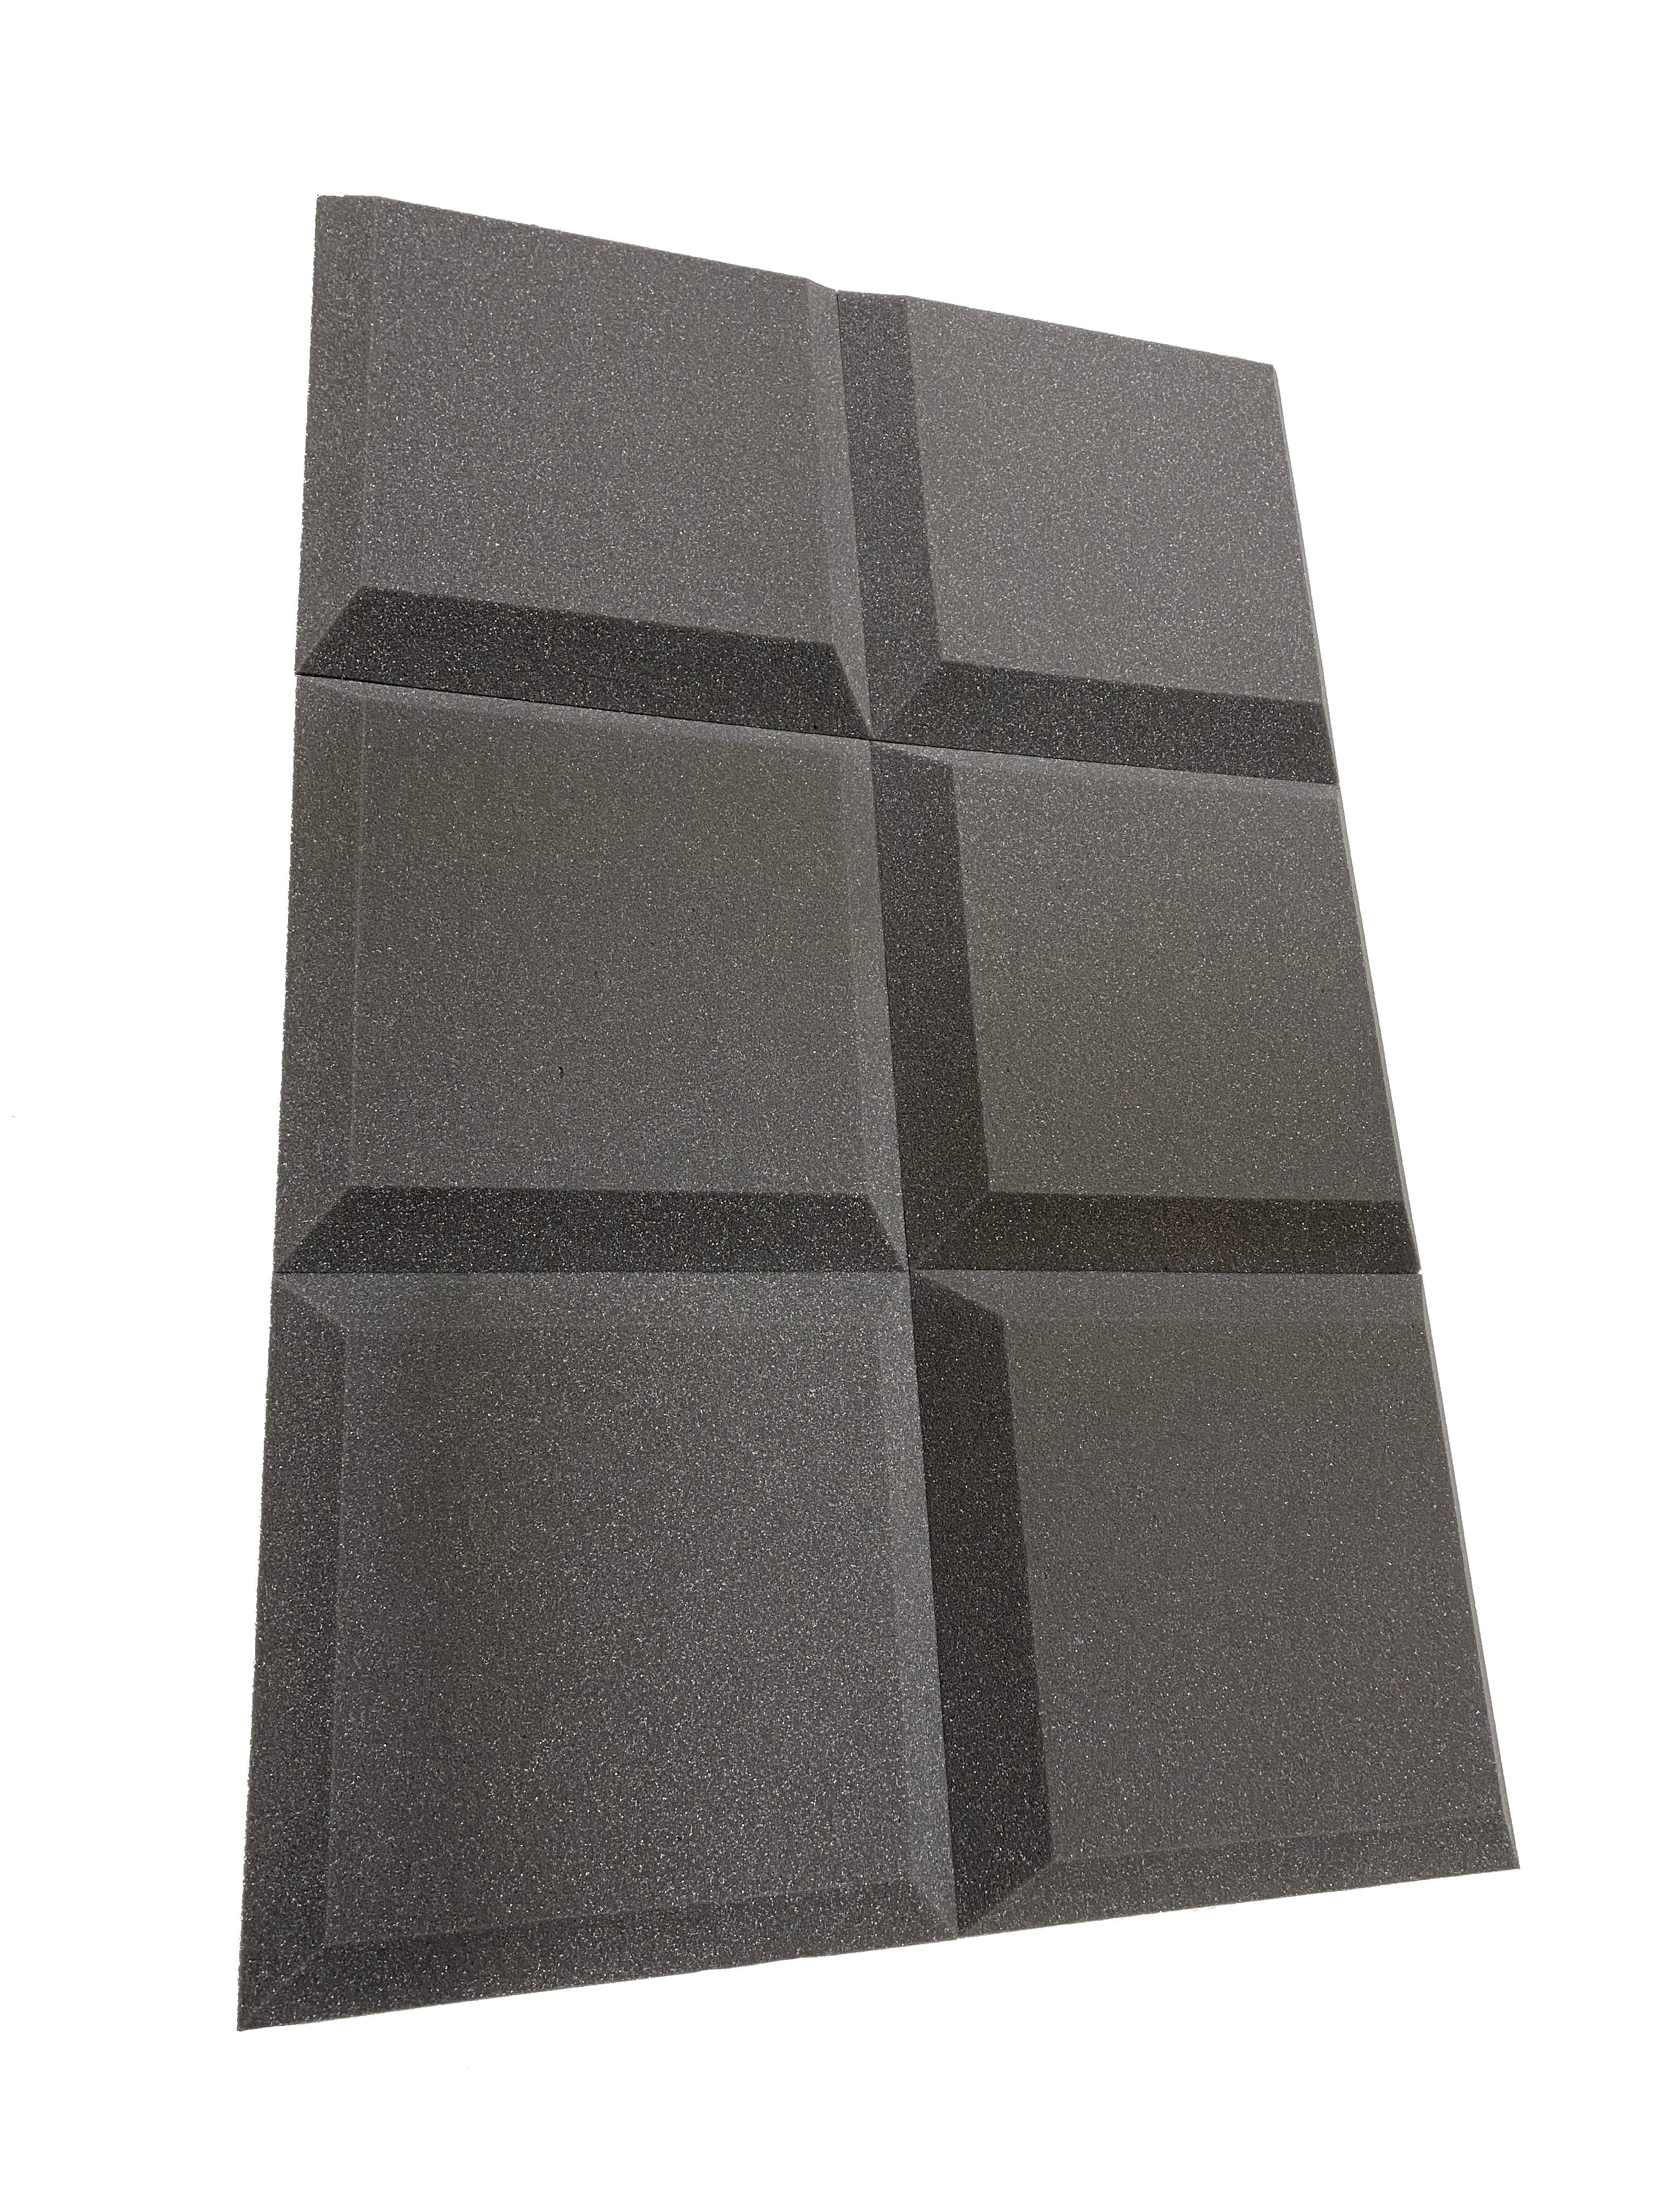 Tegular 12" Acoustic Studio Foam Tile Pack